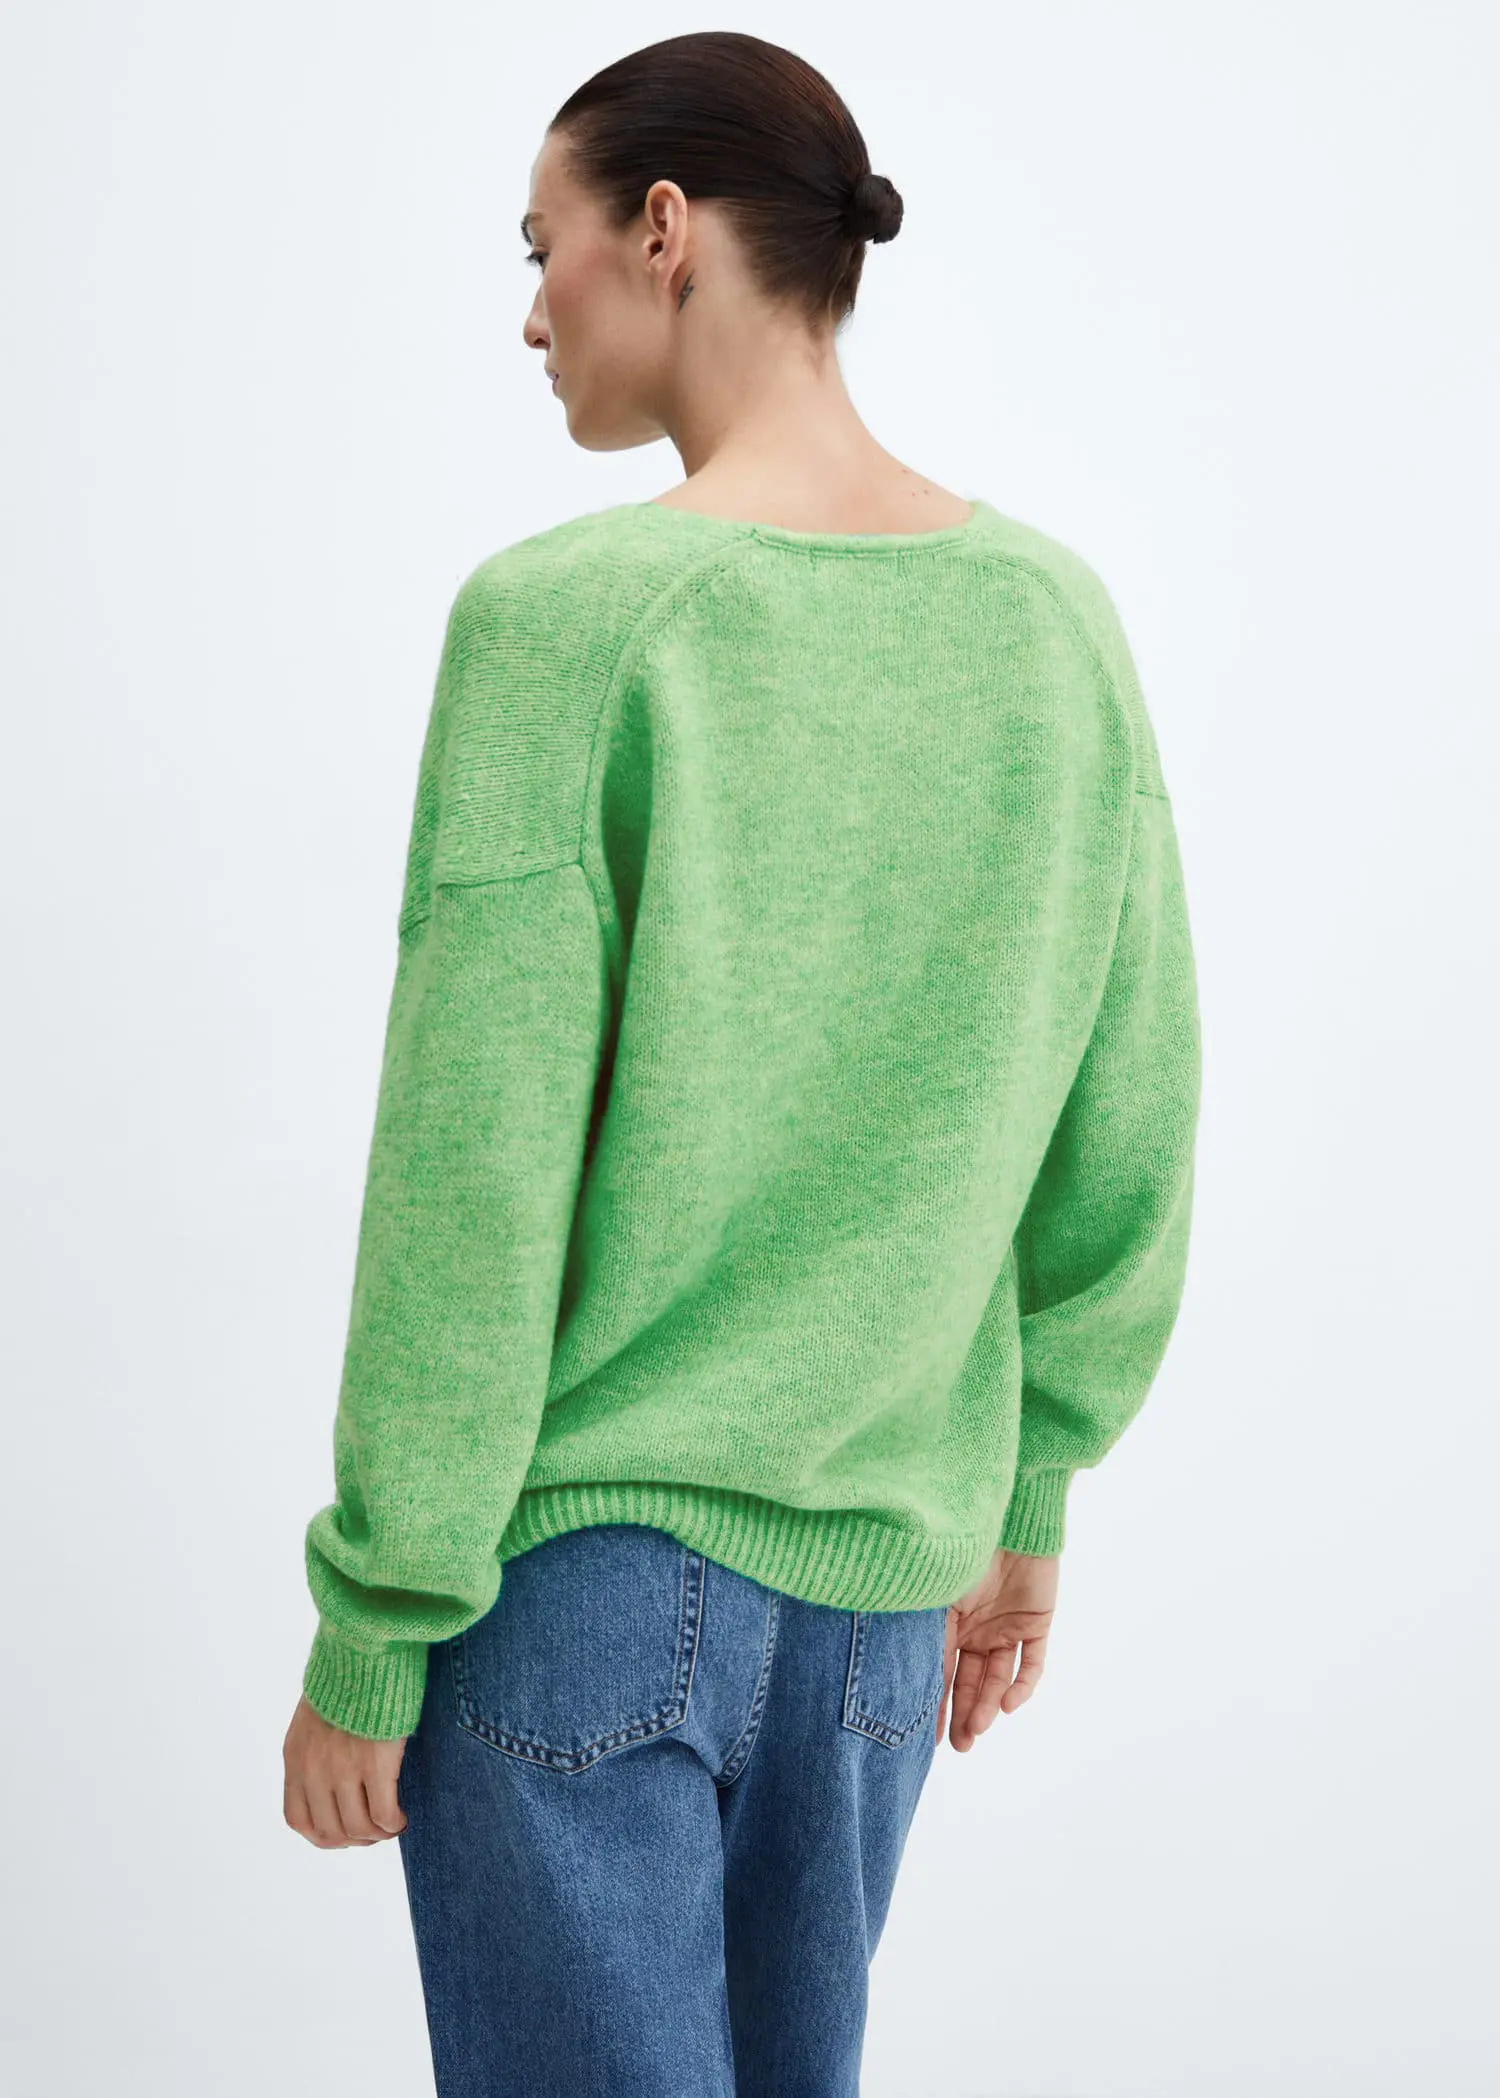 Mango V-neck knit sweater. 3